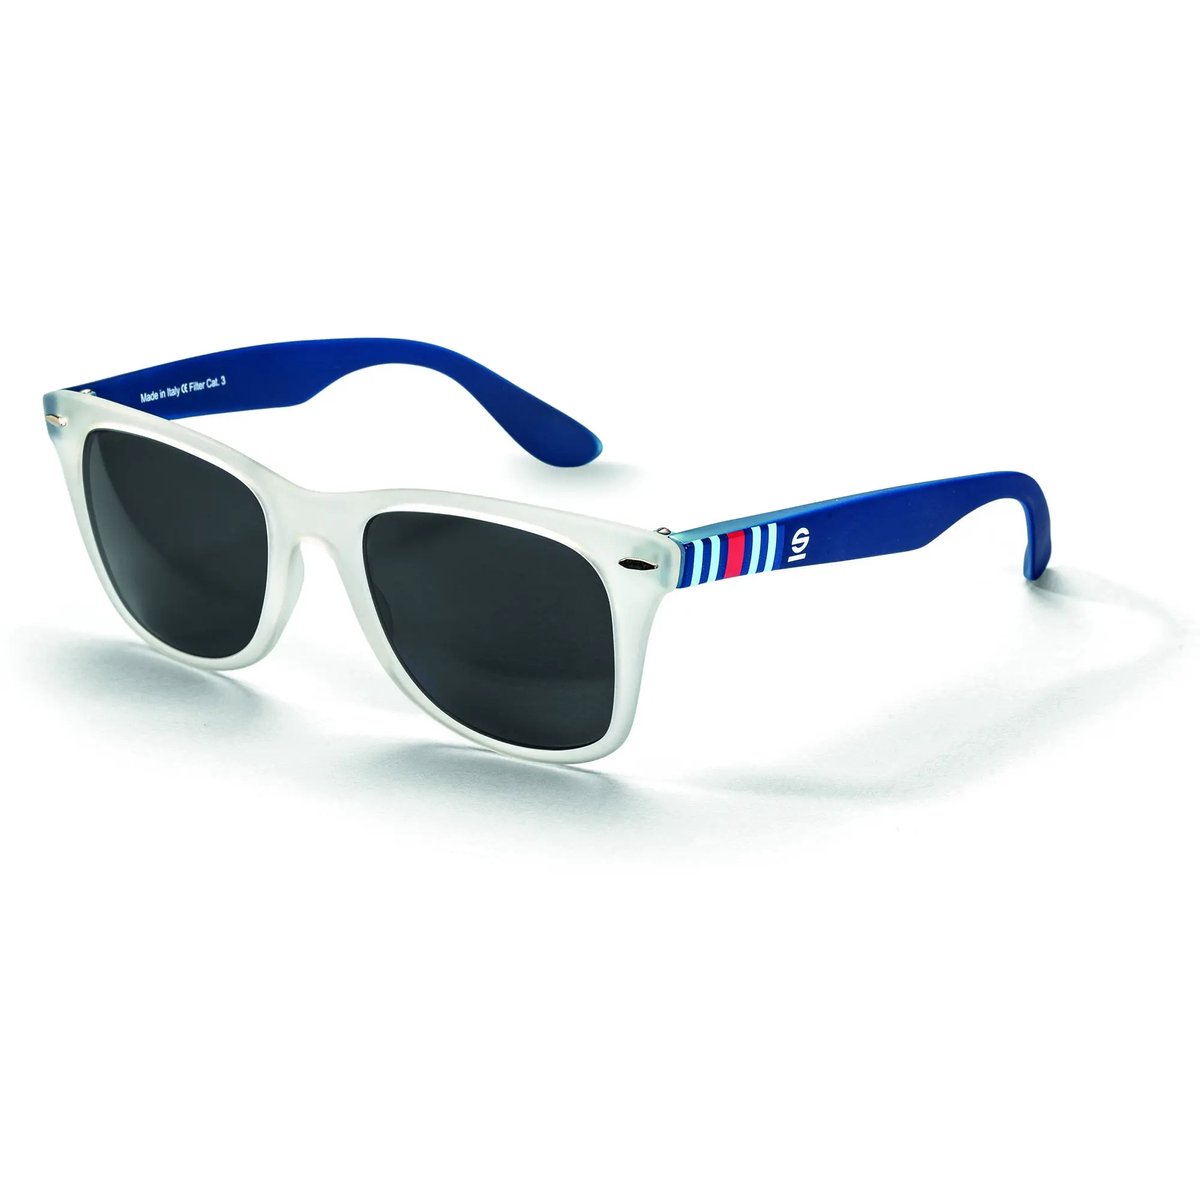 Sparco MartiniRacing - Zonnebril - Lichtgewicht - UV bescherming - Blauw/Wit